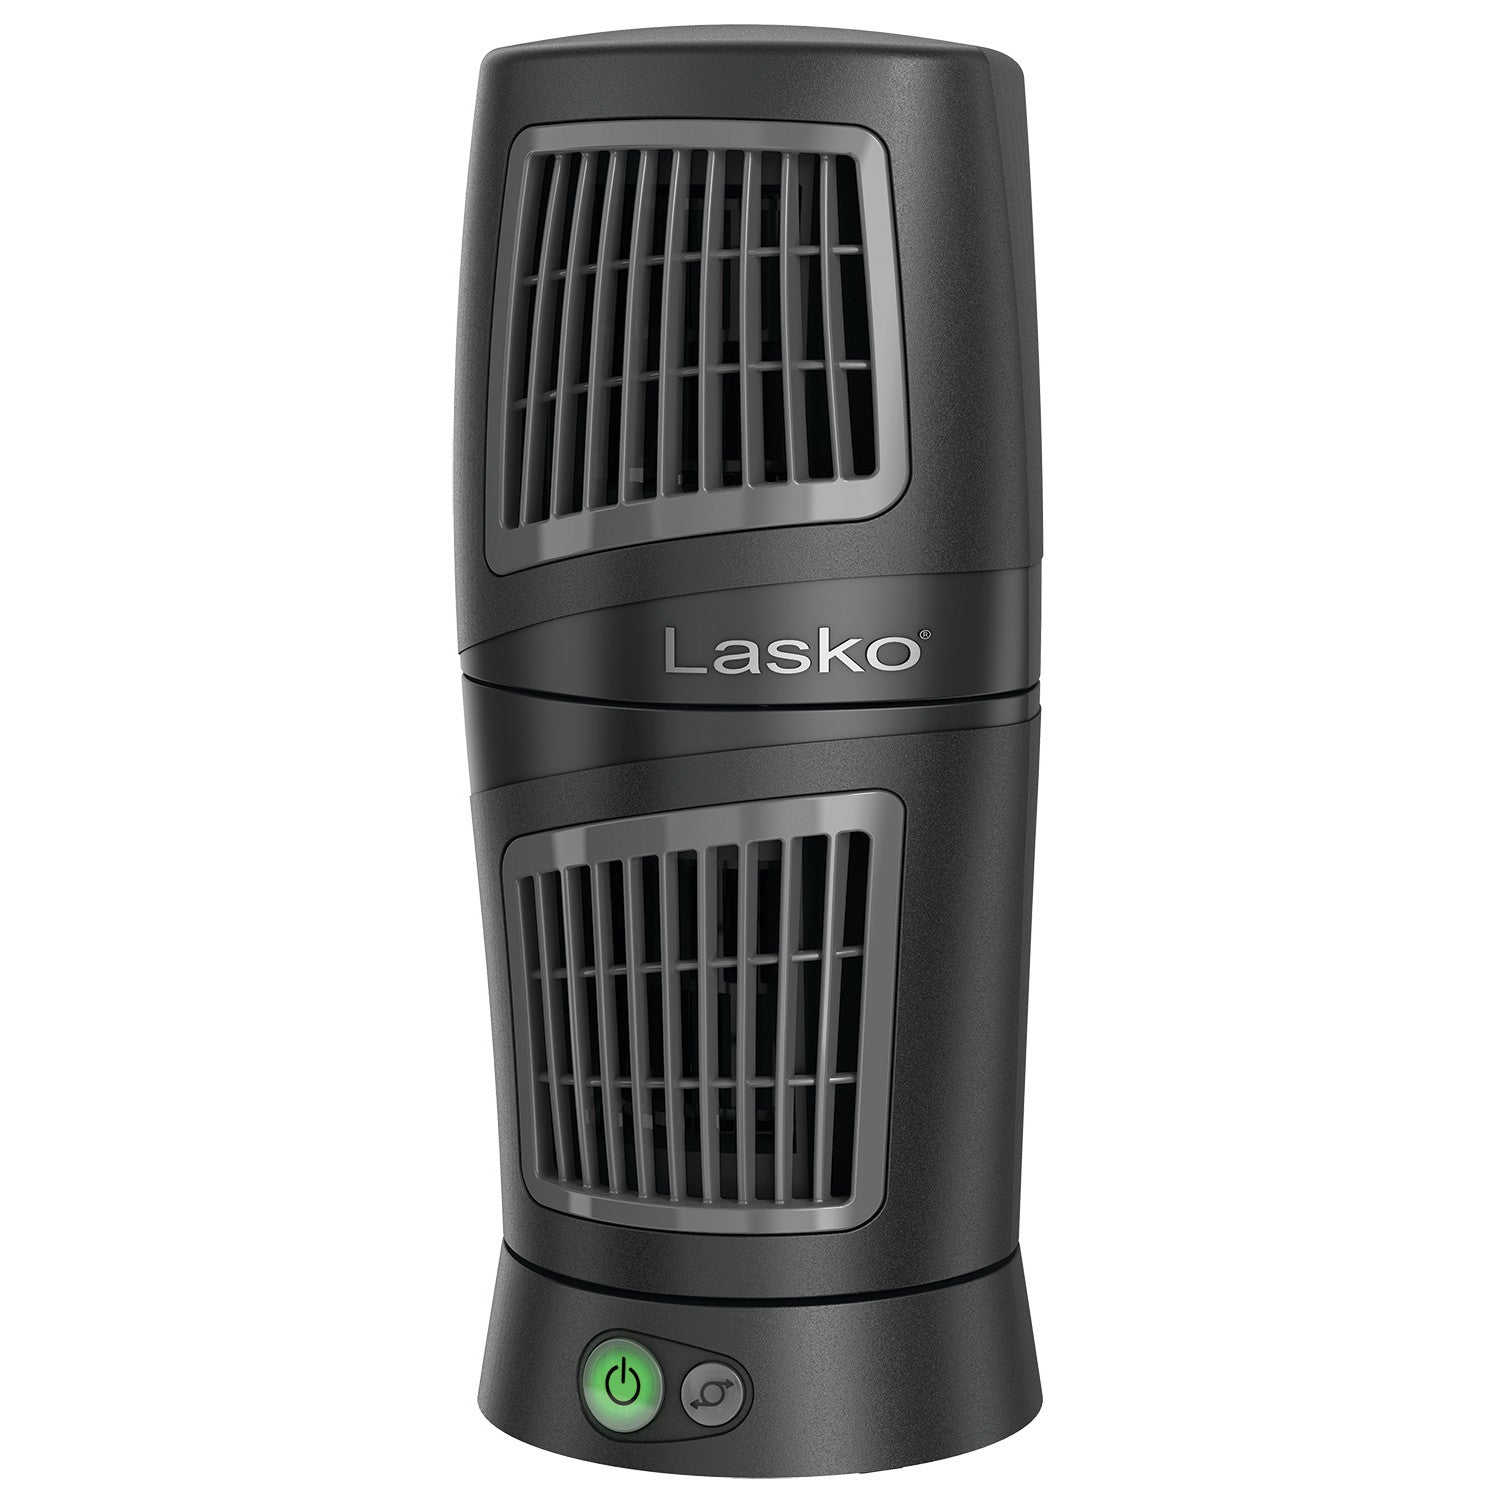 Lasko 4911 Twist-Top Desktop Tower Fan with 3 Speeds